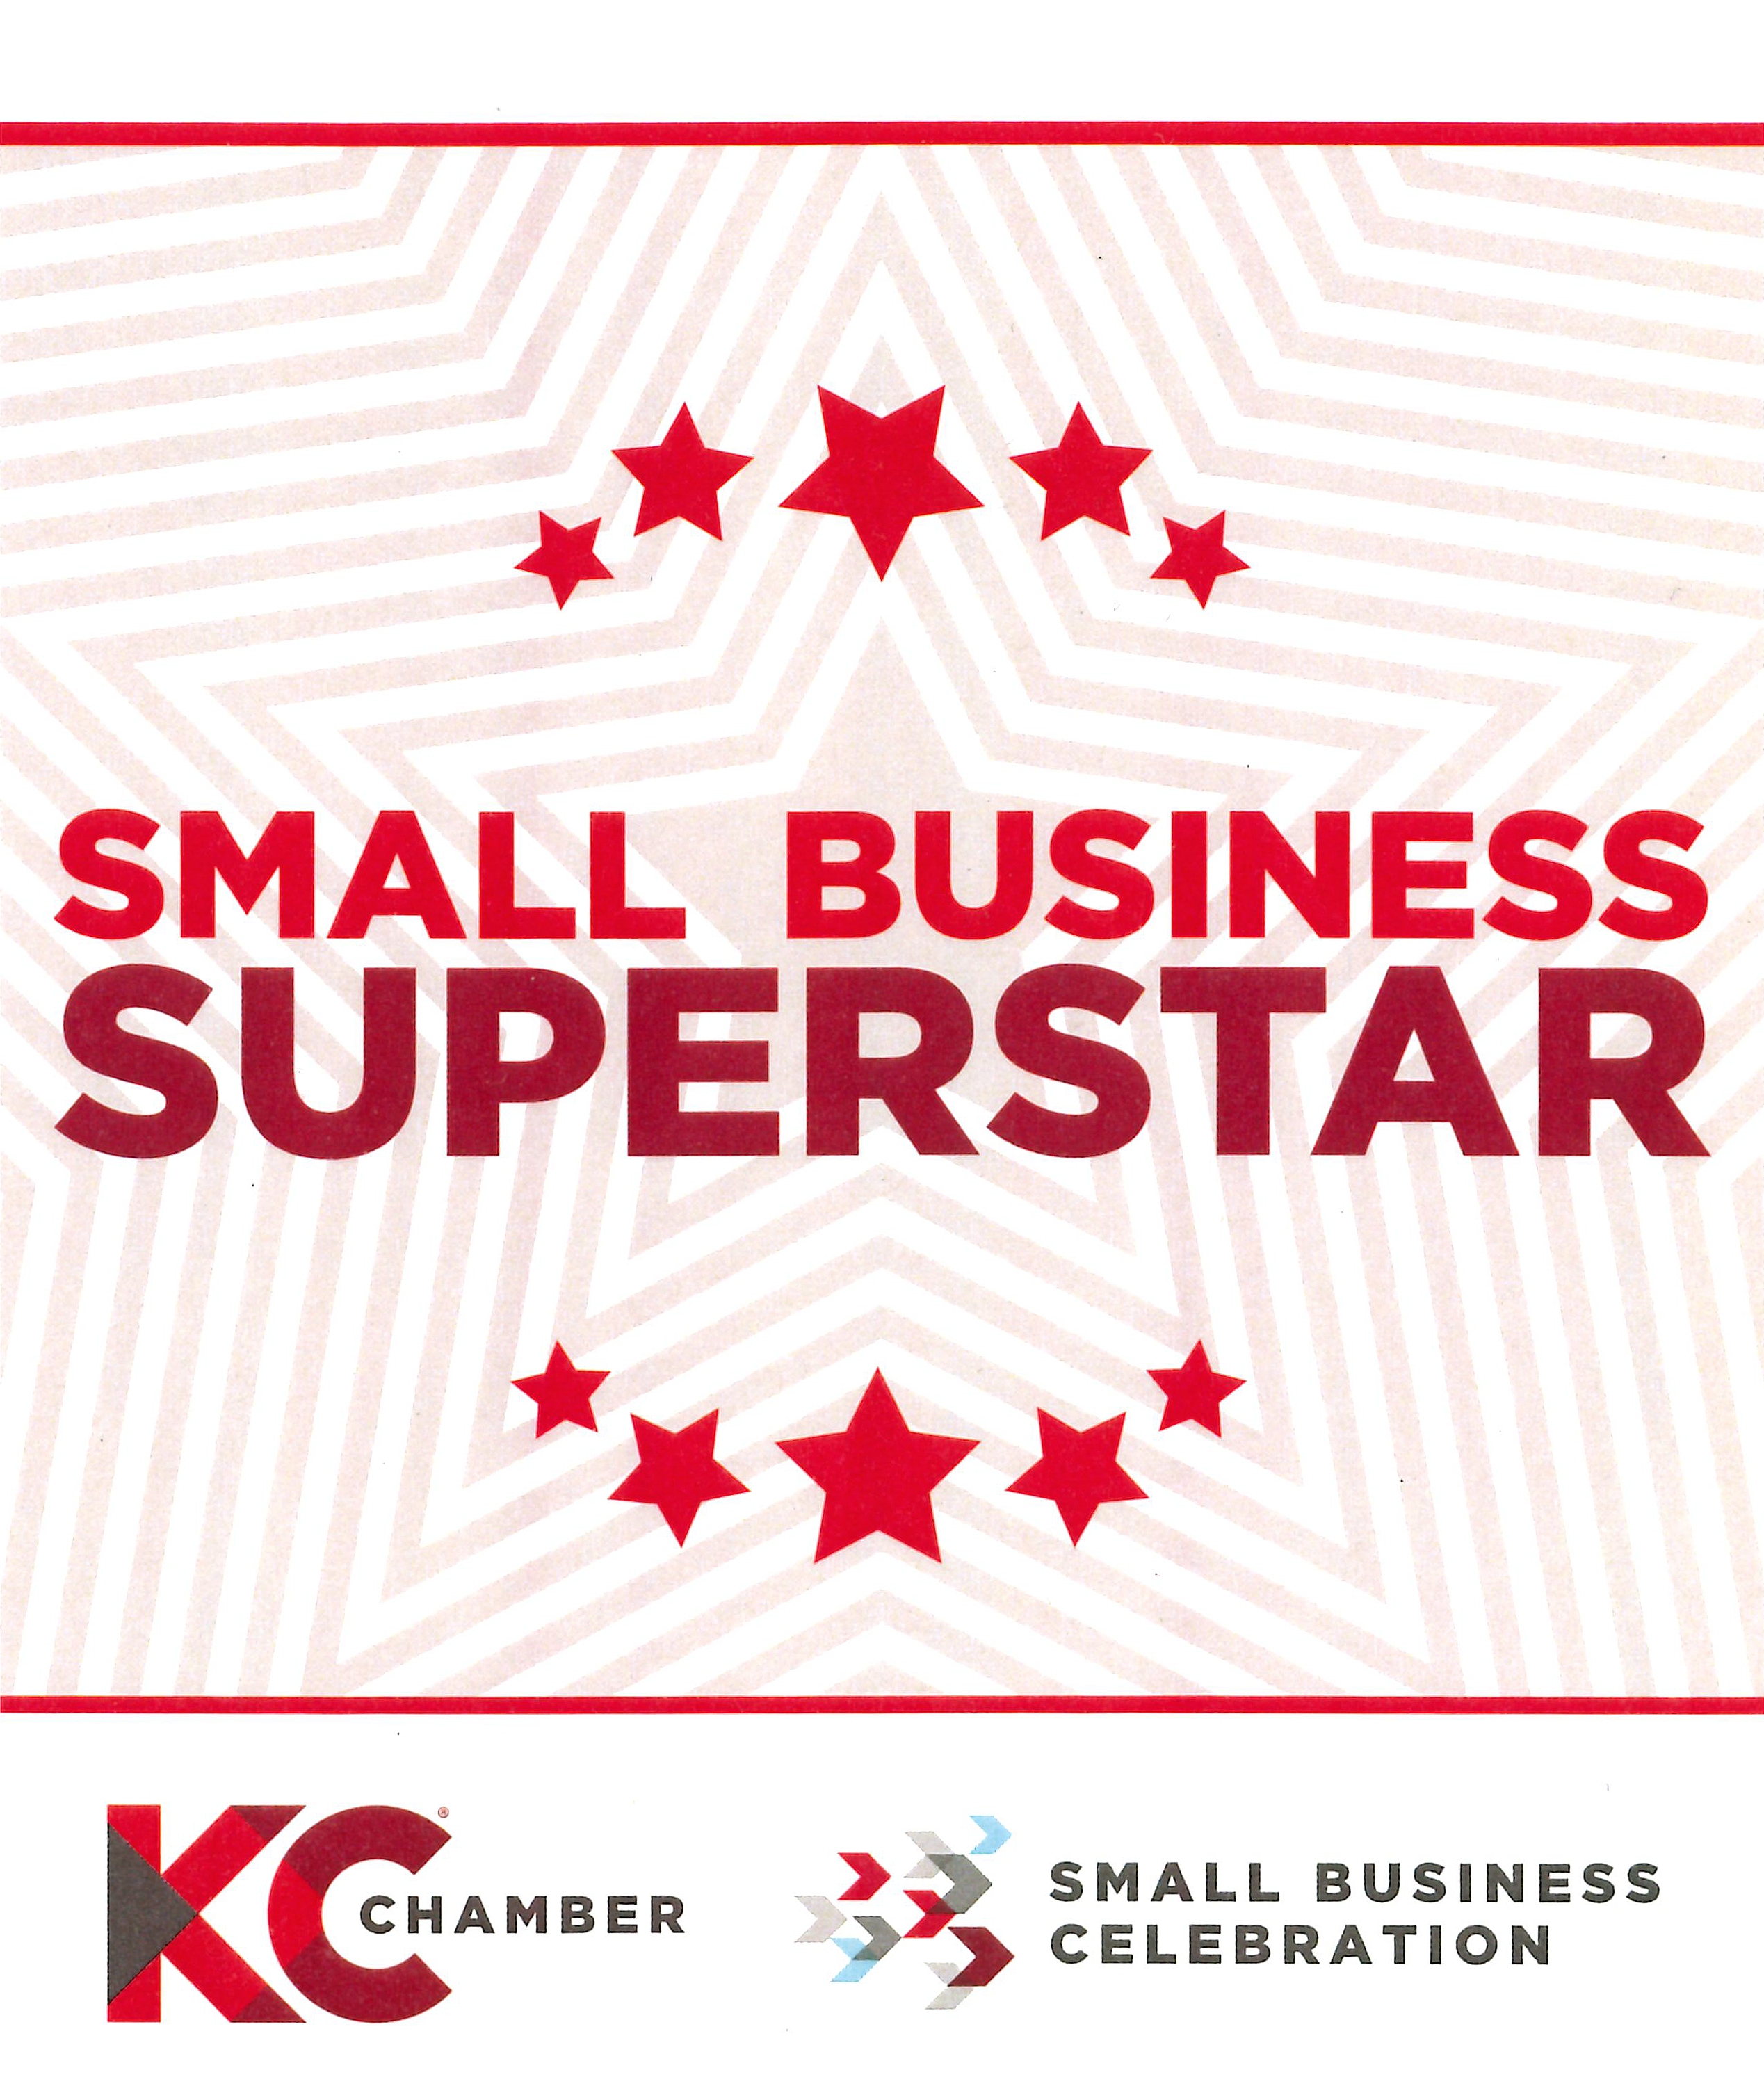 Small Business Superstar Award